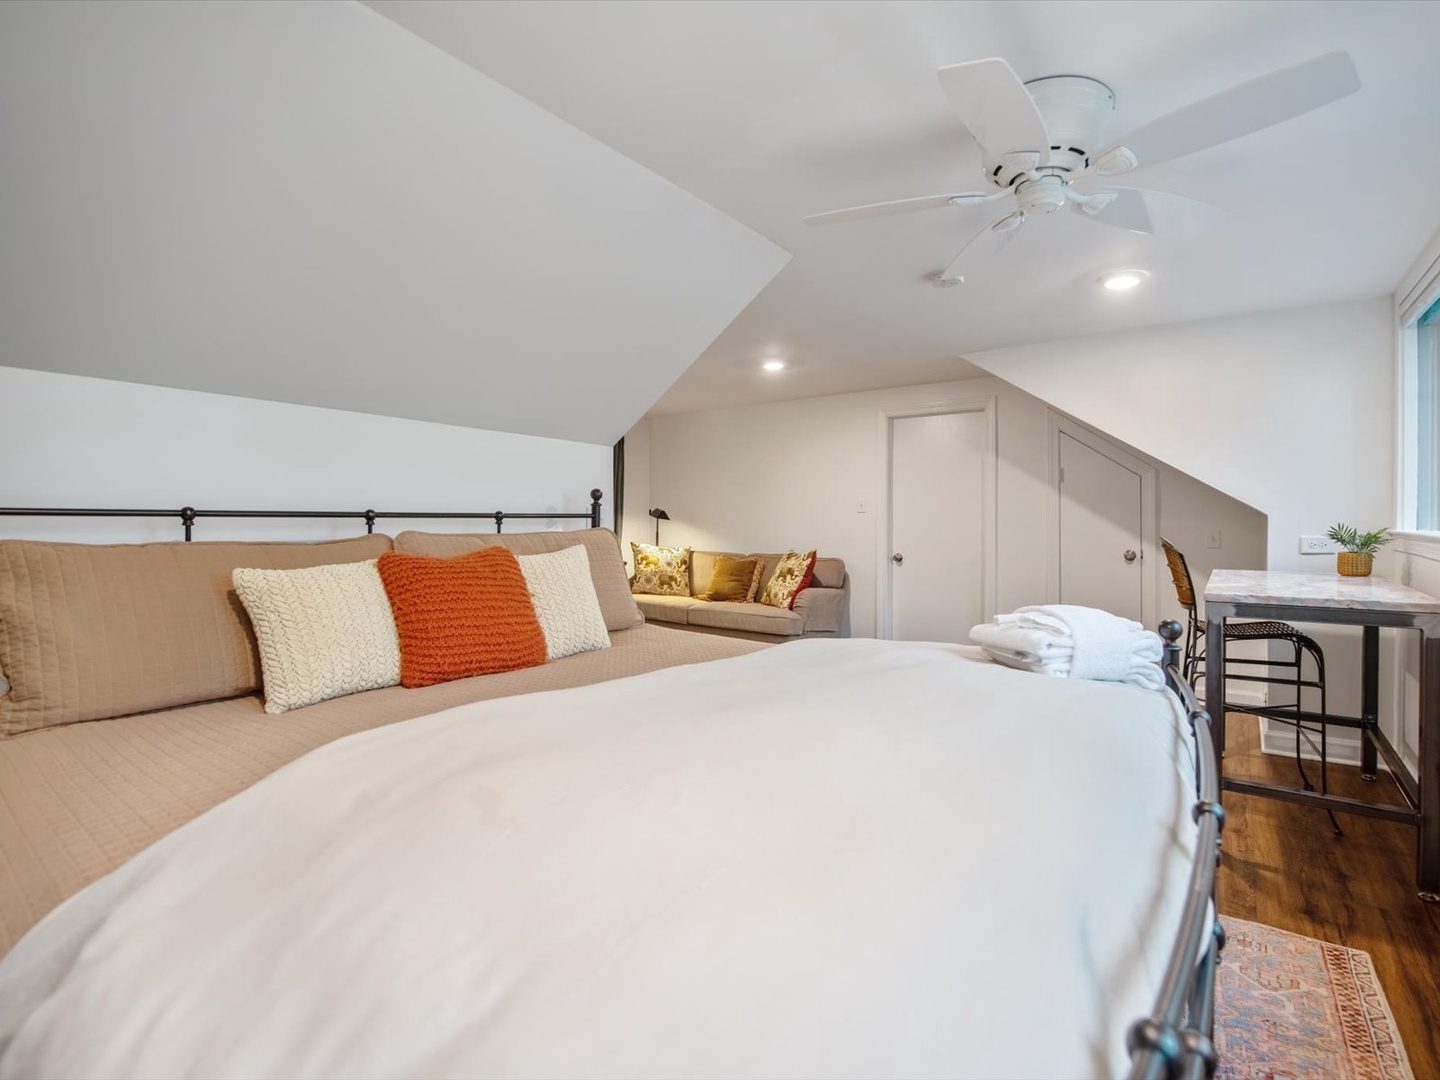 Gleesome Inn- Upper level bedroom with modern decor